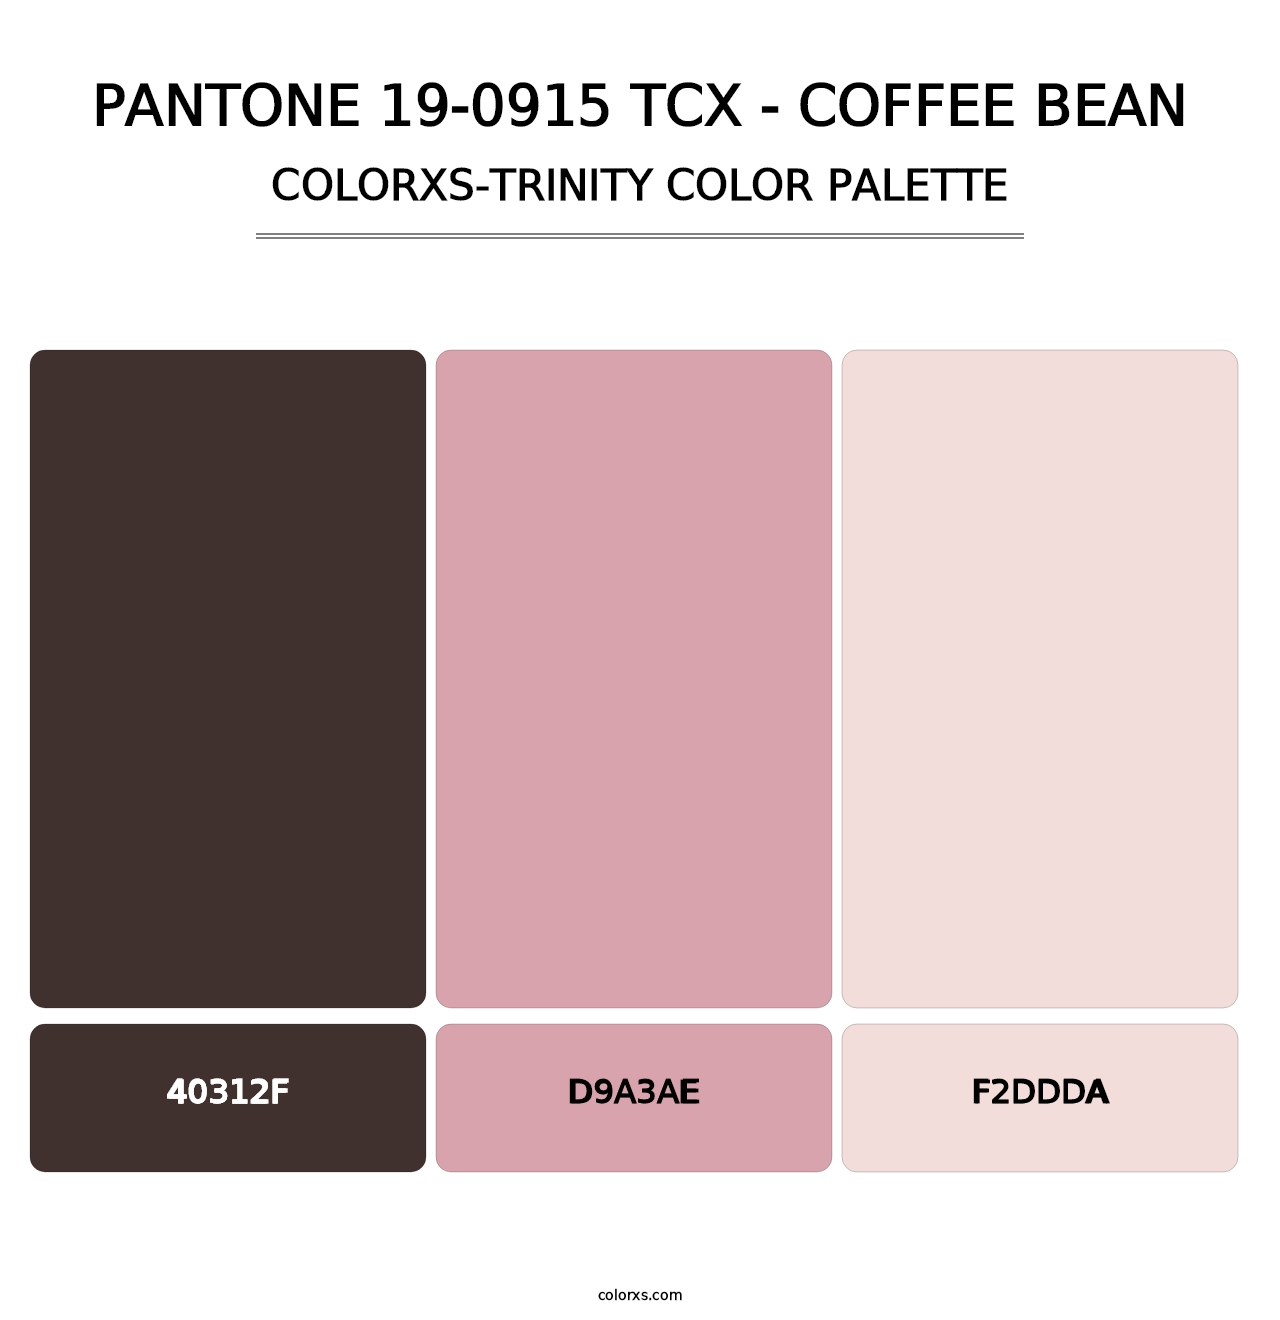 PANTONE 19-0915 TCX - Coffee Bean - Colorxs Trinity Palette